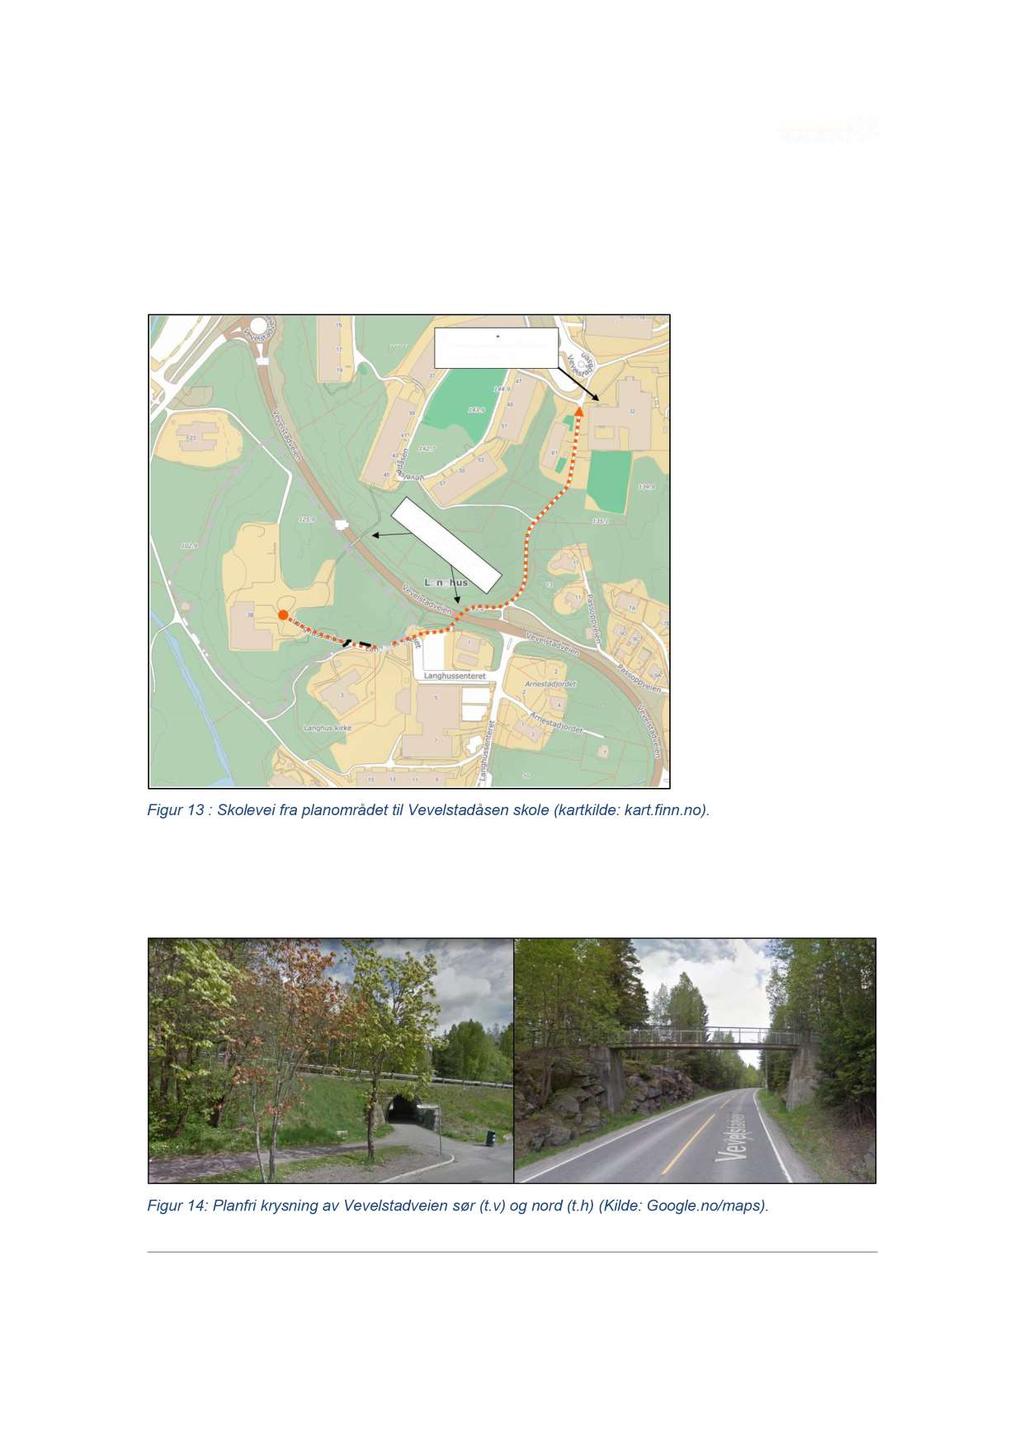 6 Trafikksikker skolevei Vevelstadåsen barneskole ligger ca. 500 meter fra planområdet. Korteste rute for gående og syklende er illustrert i figur 13.